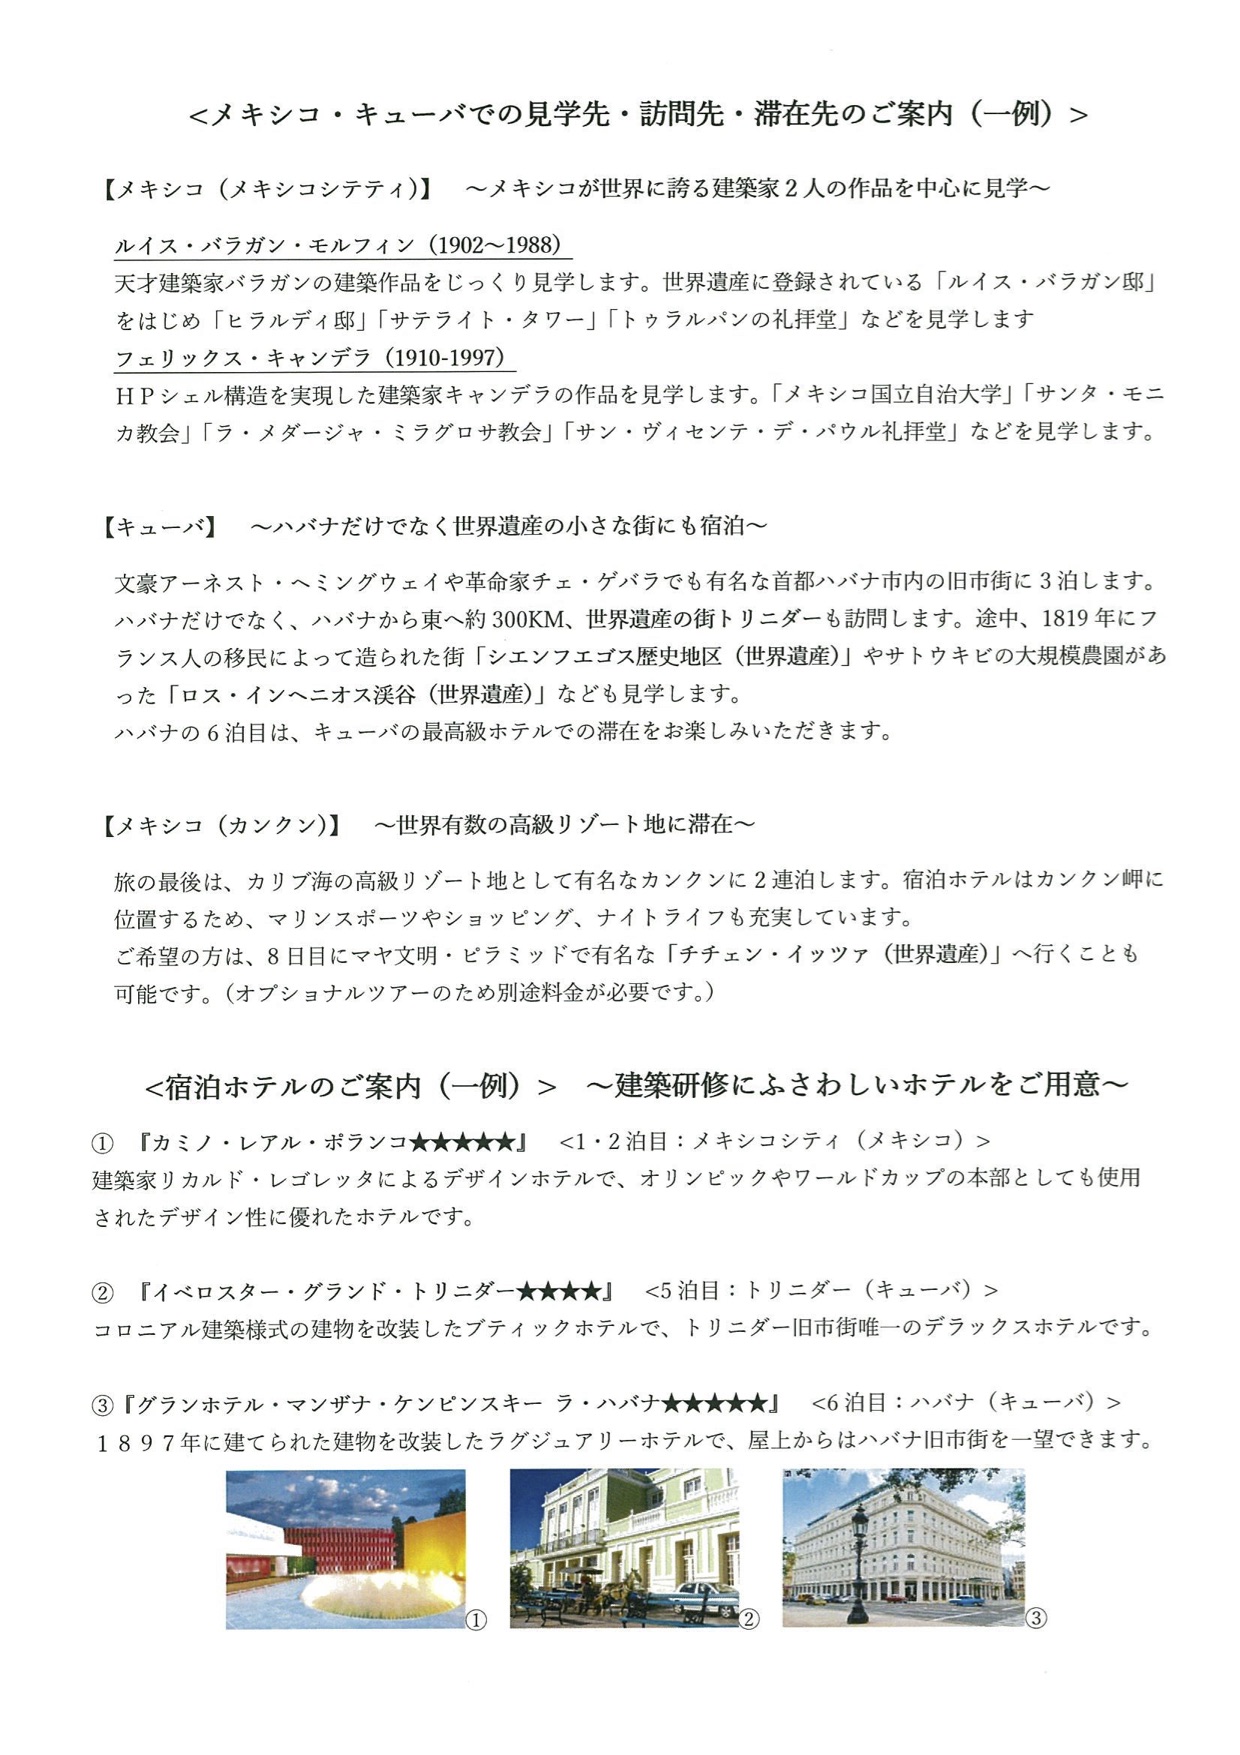 http://aokou.jp/news/images/%E3%83%A1%E3%82%AD%E3%82%B7%E3%82%B3%EF%BC%92.jpg